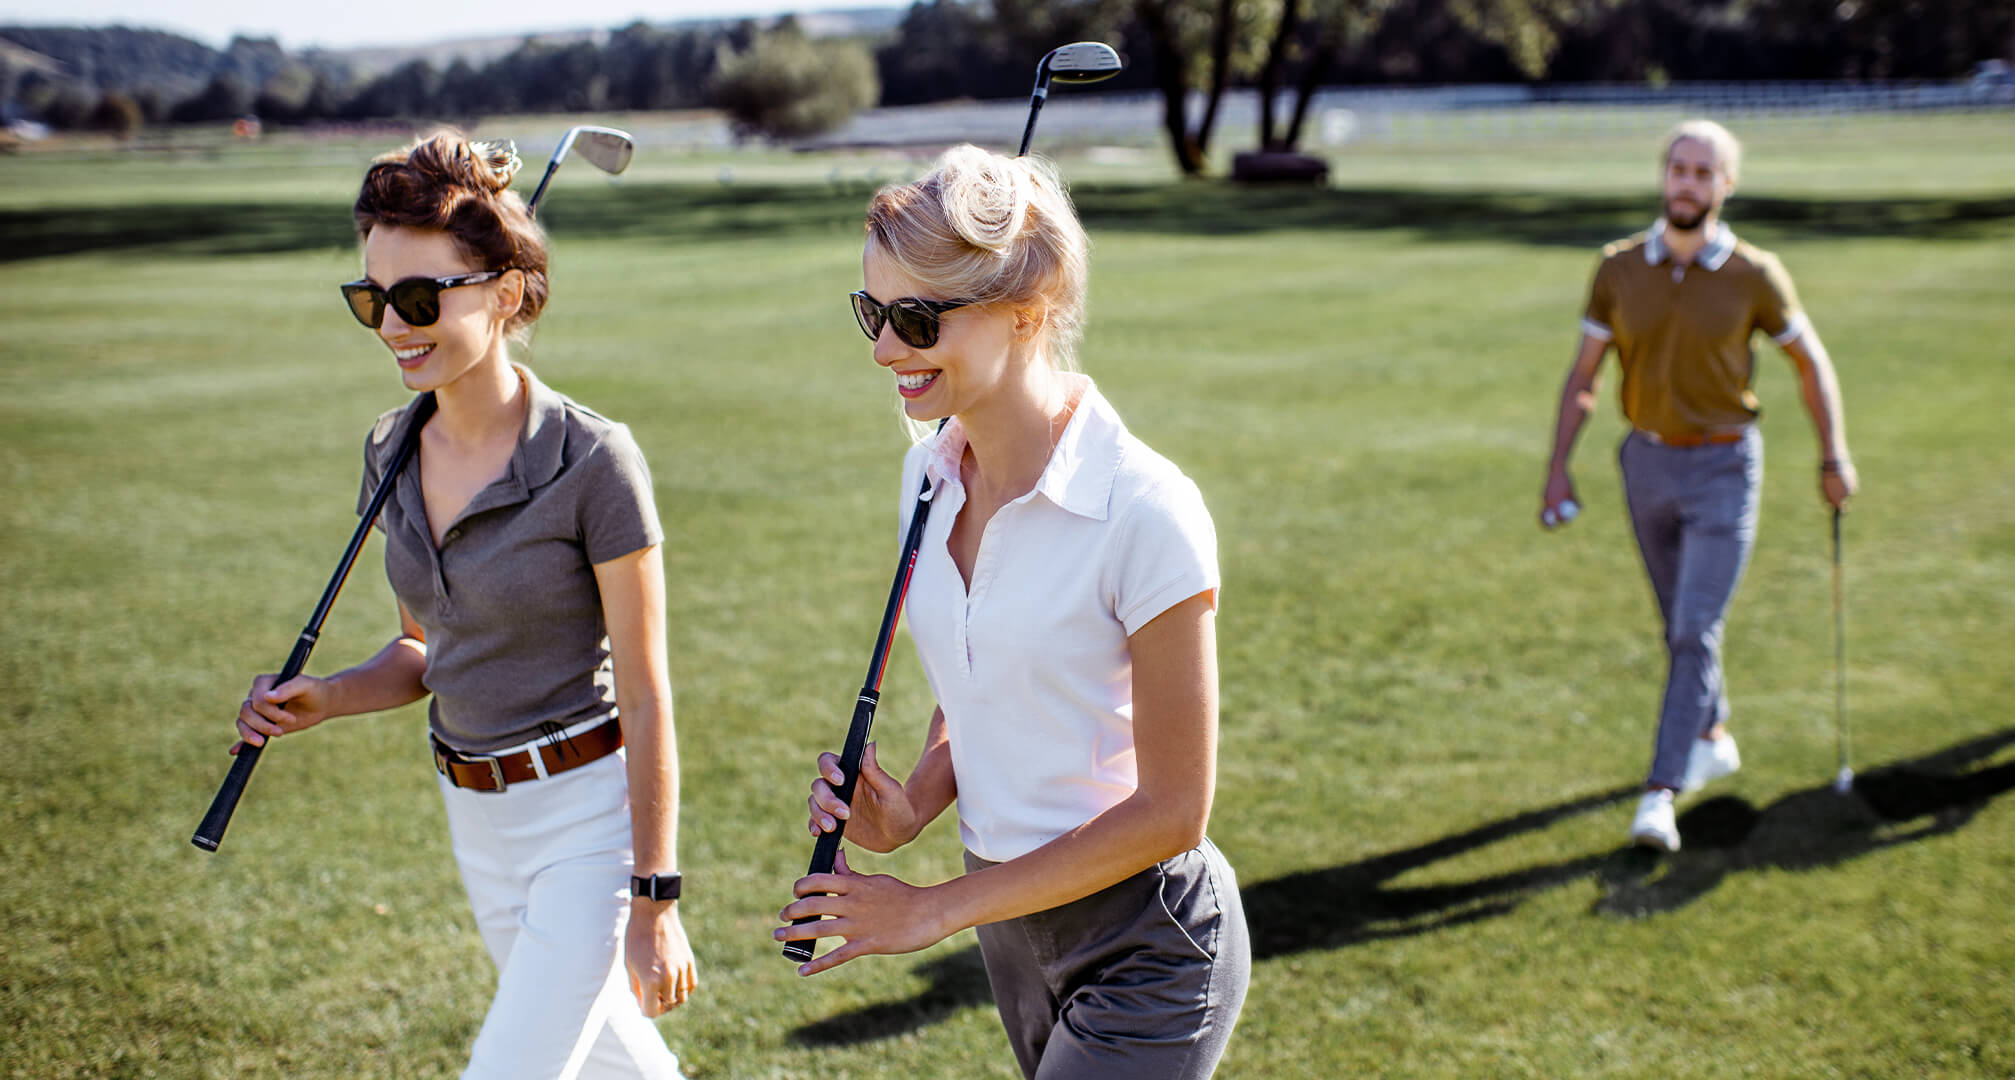 δύο άτομα παίζουν γκολφ φορώντας γυαλιά ηλίου